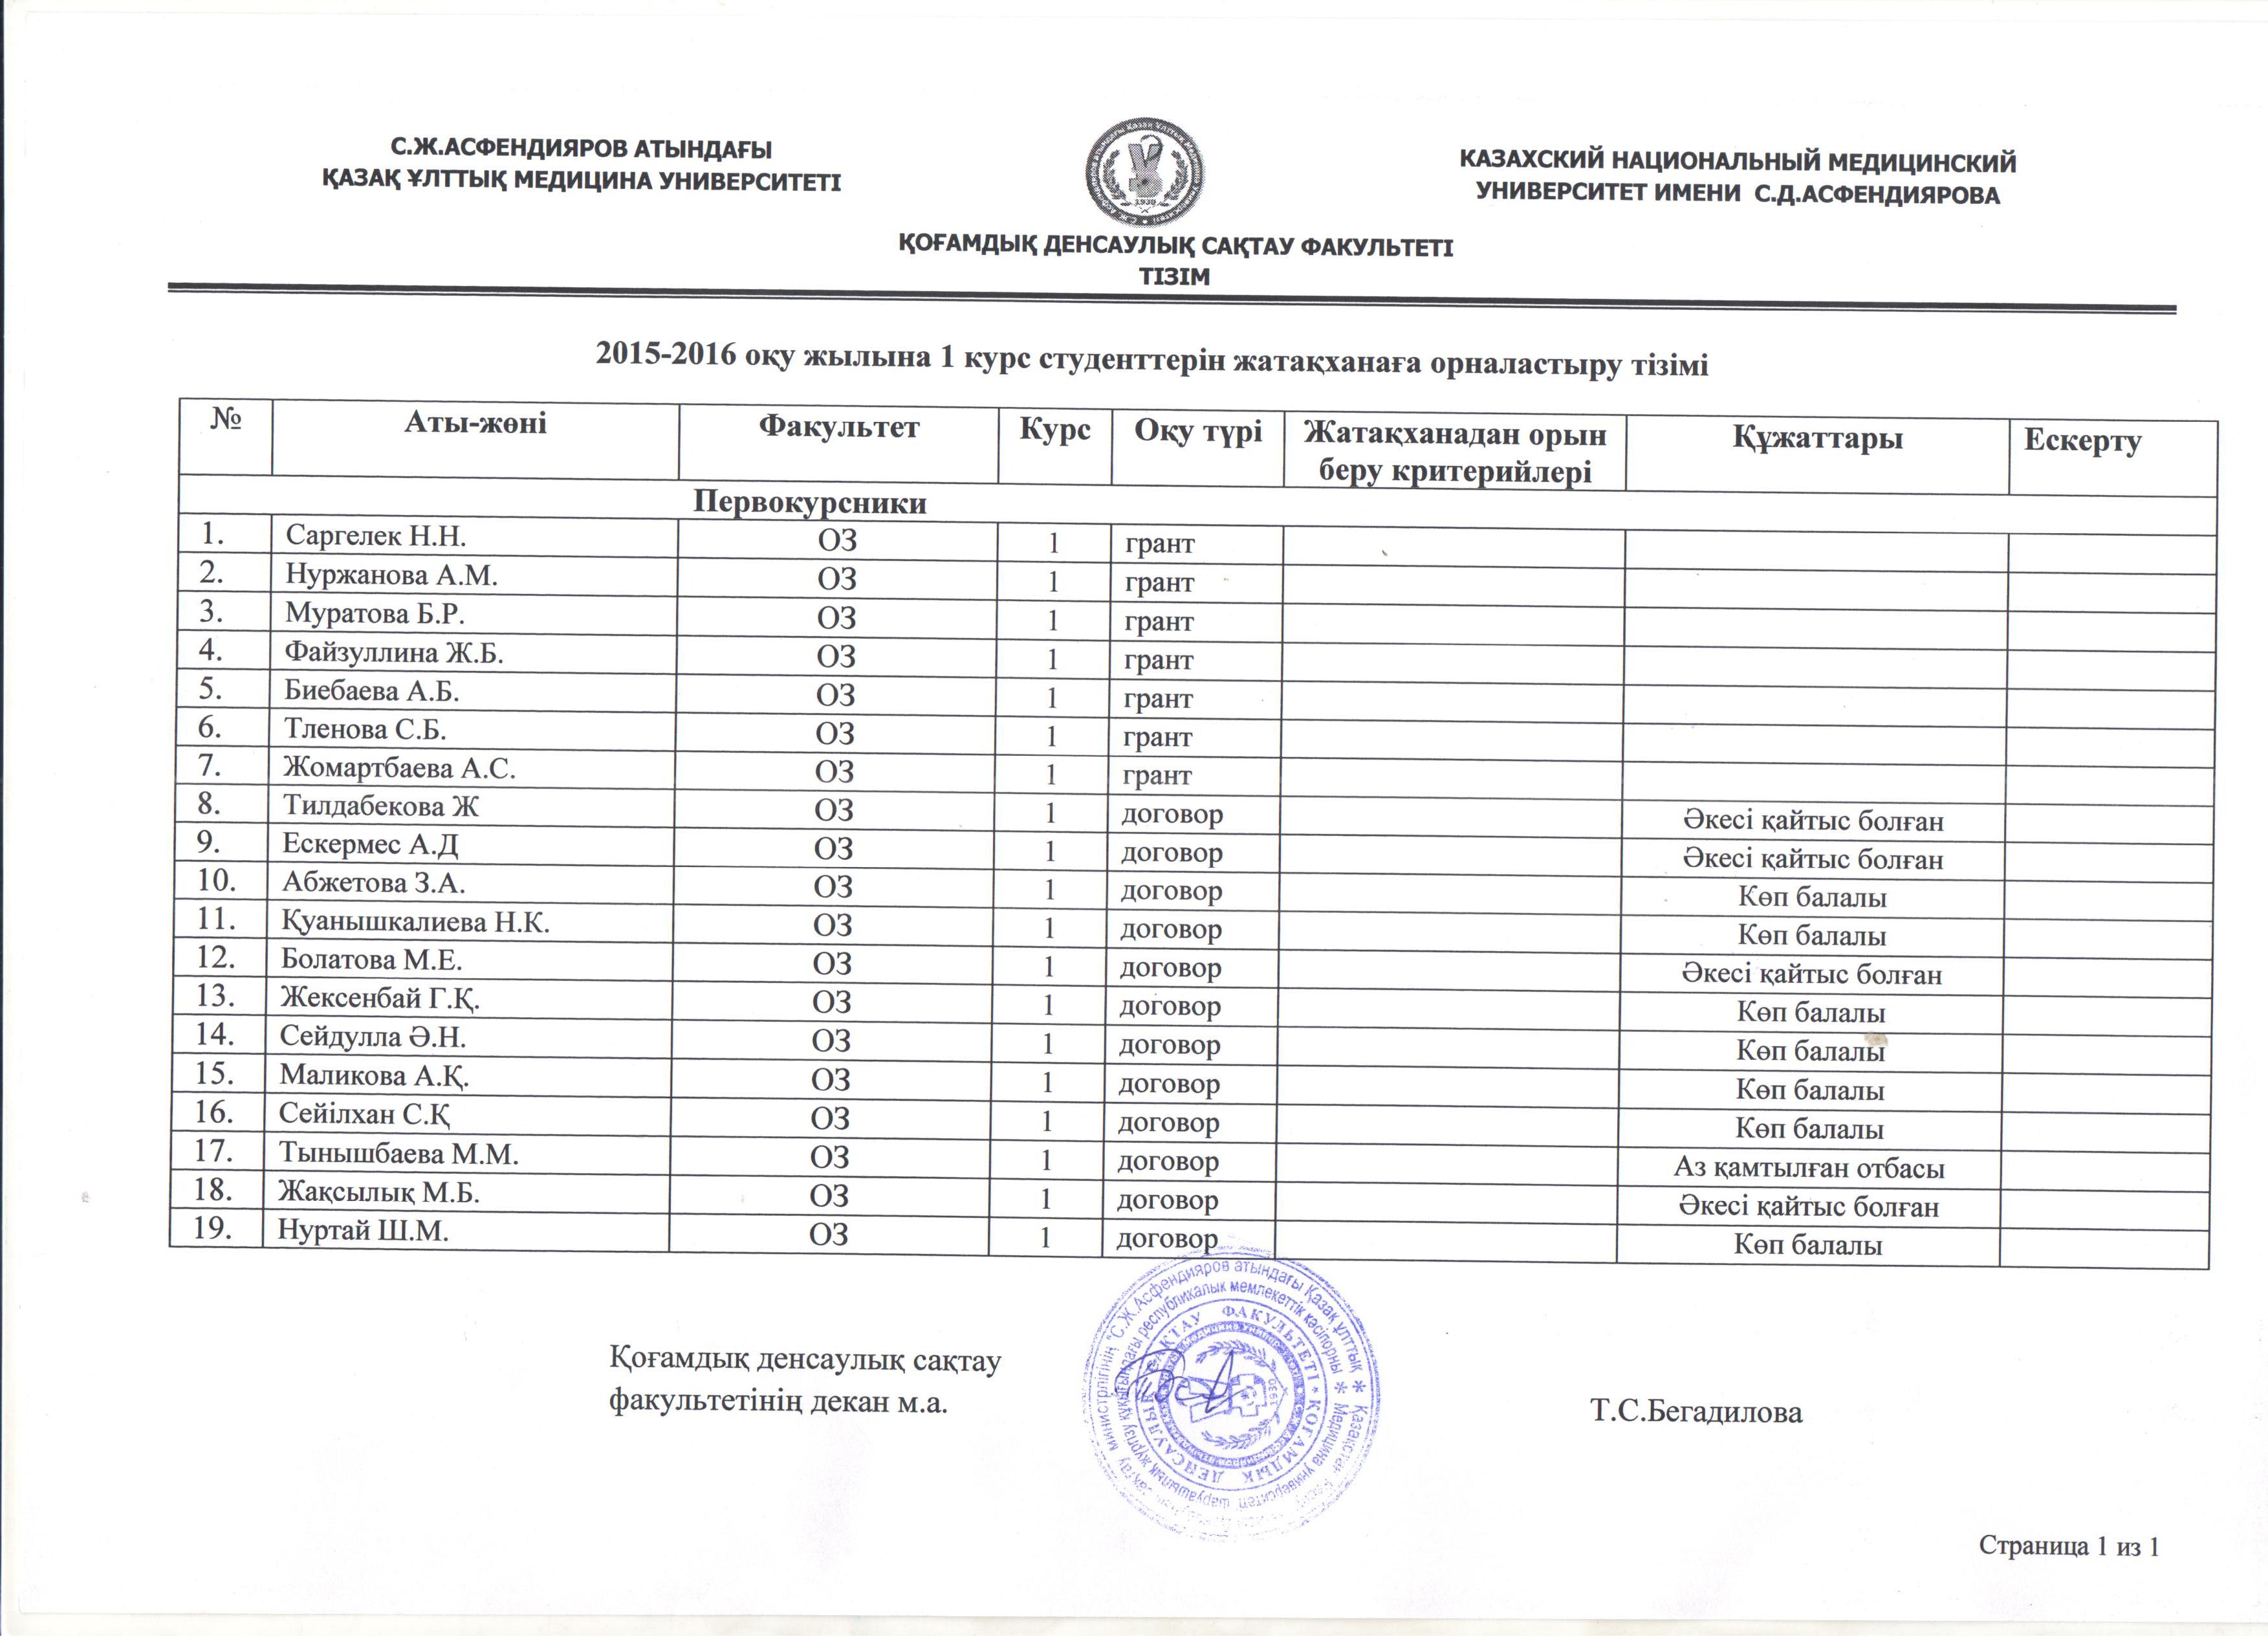 Список первокурсников получивших место в общежитиях КазНМУ на 2015-2016 учебный год. ФакультетОбщественного Здравоохранения